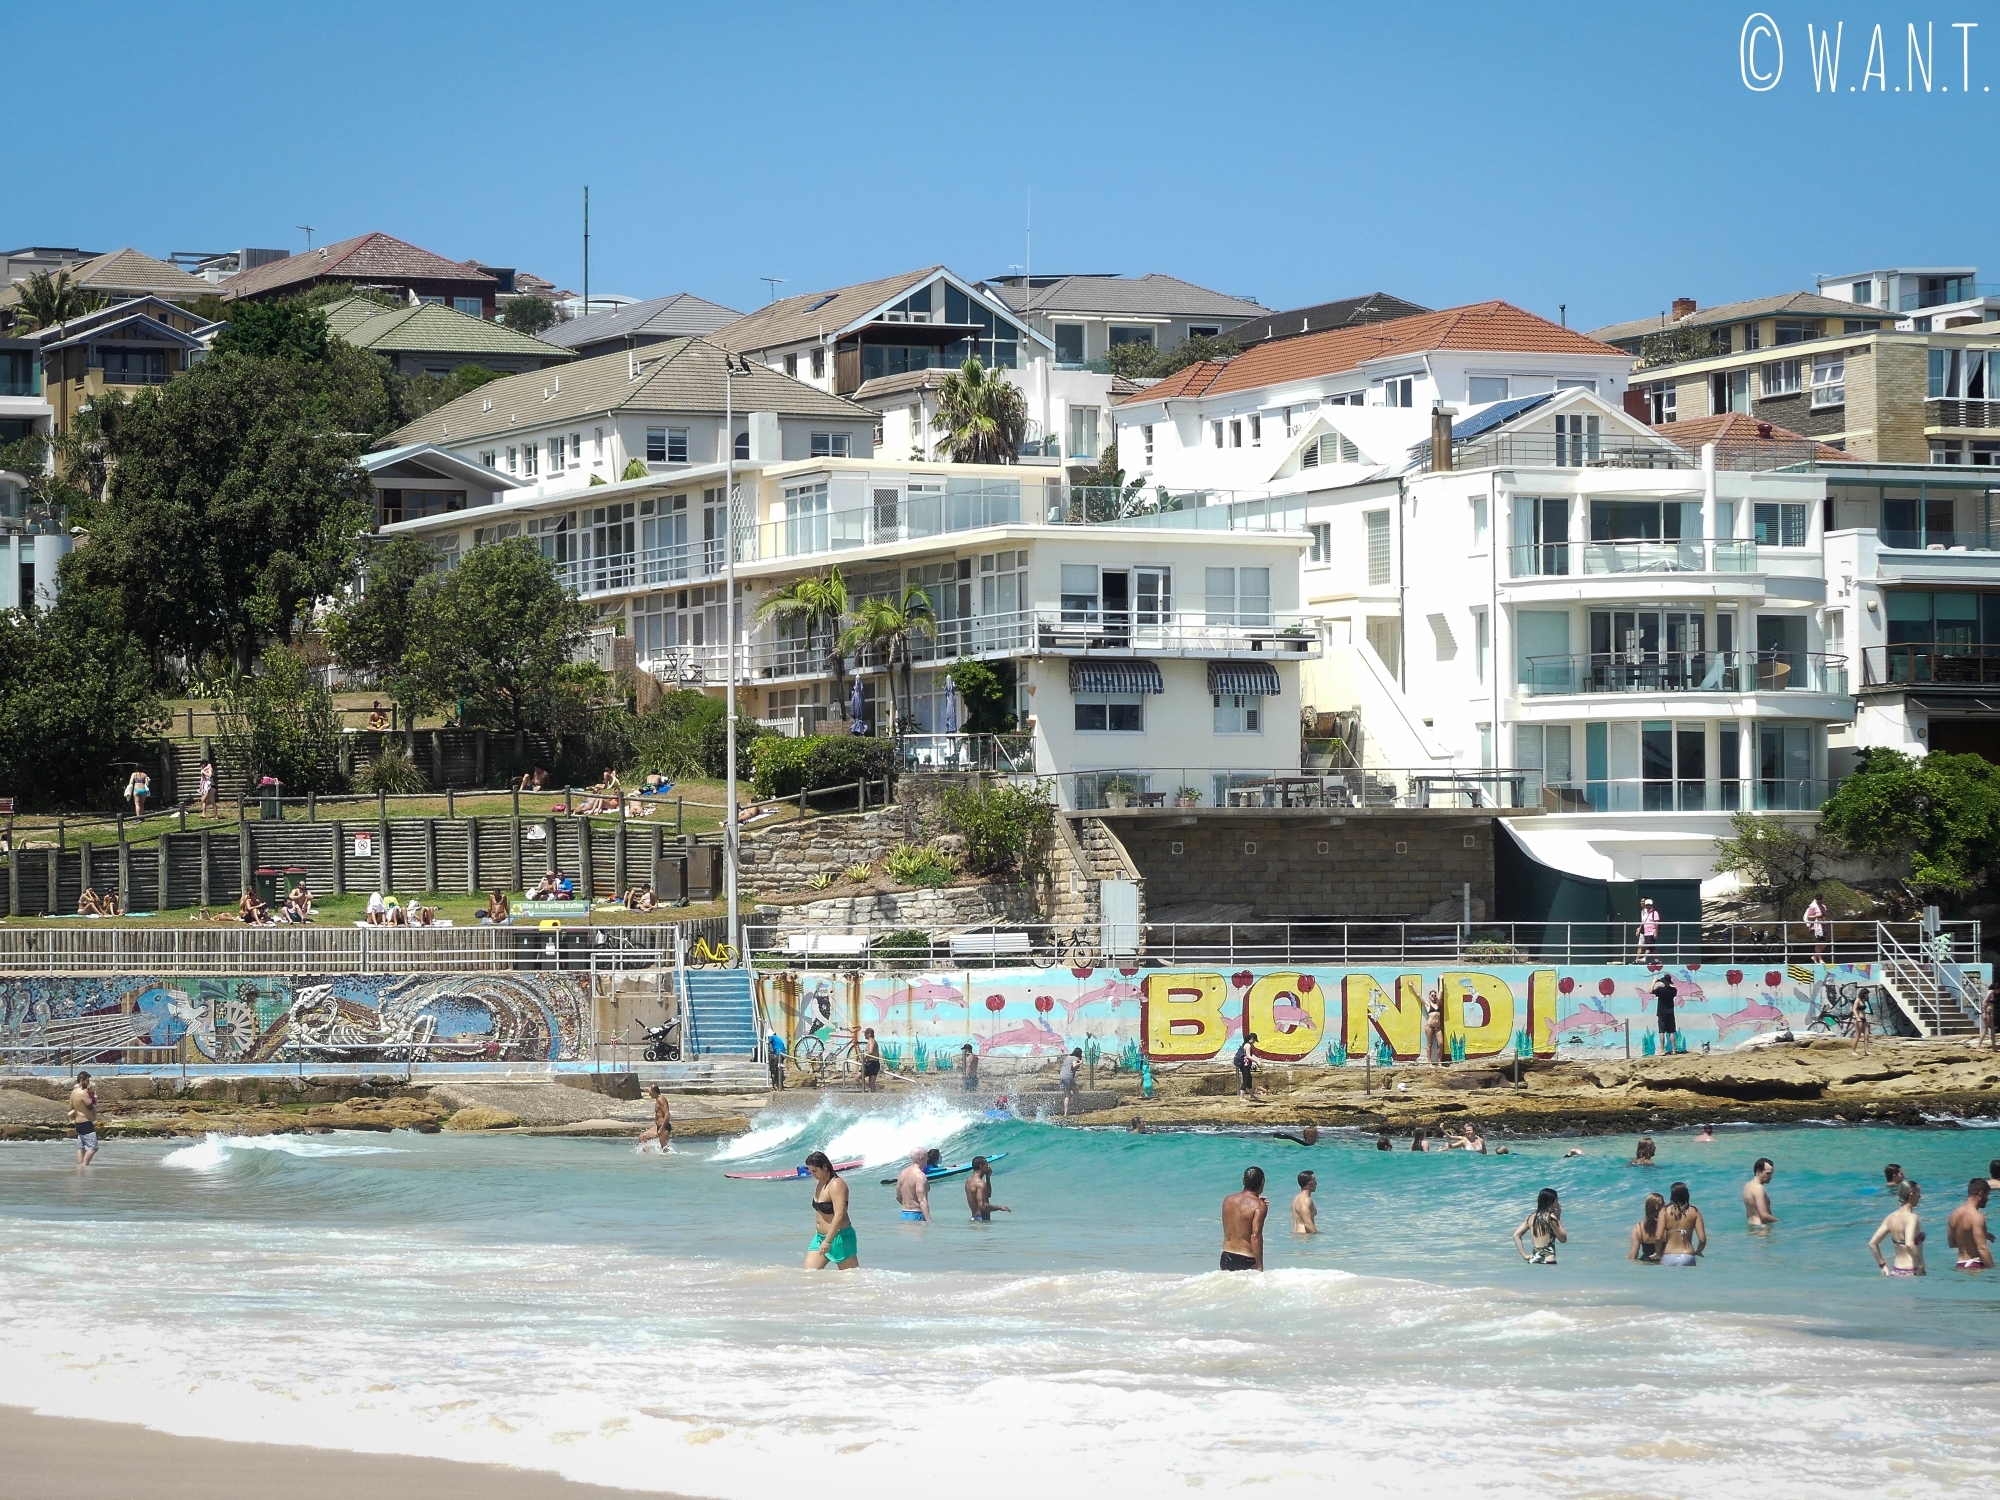 La plage de Bondi près de Sydney est très populaire